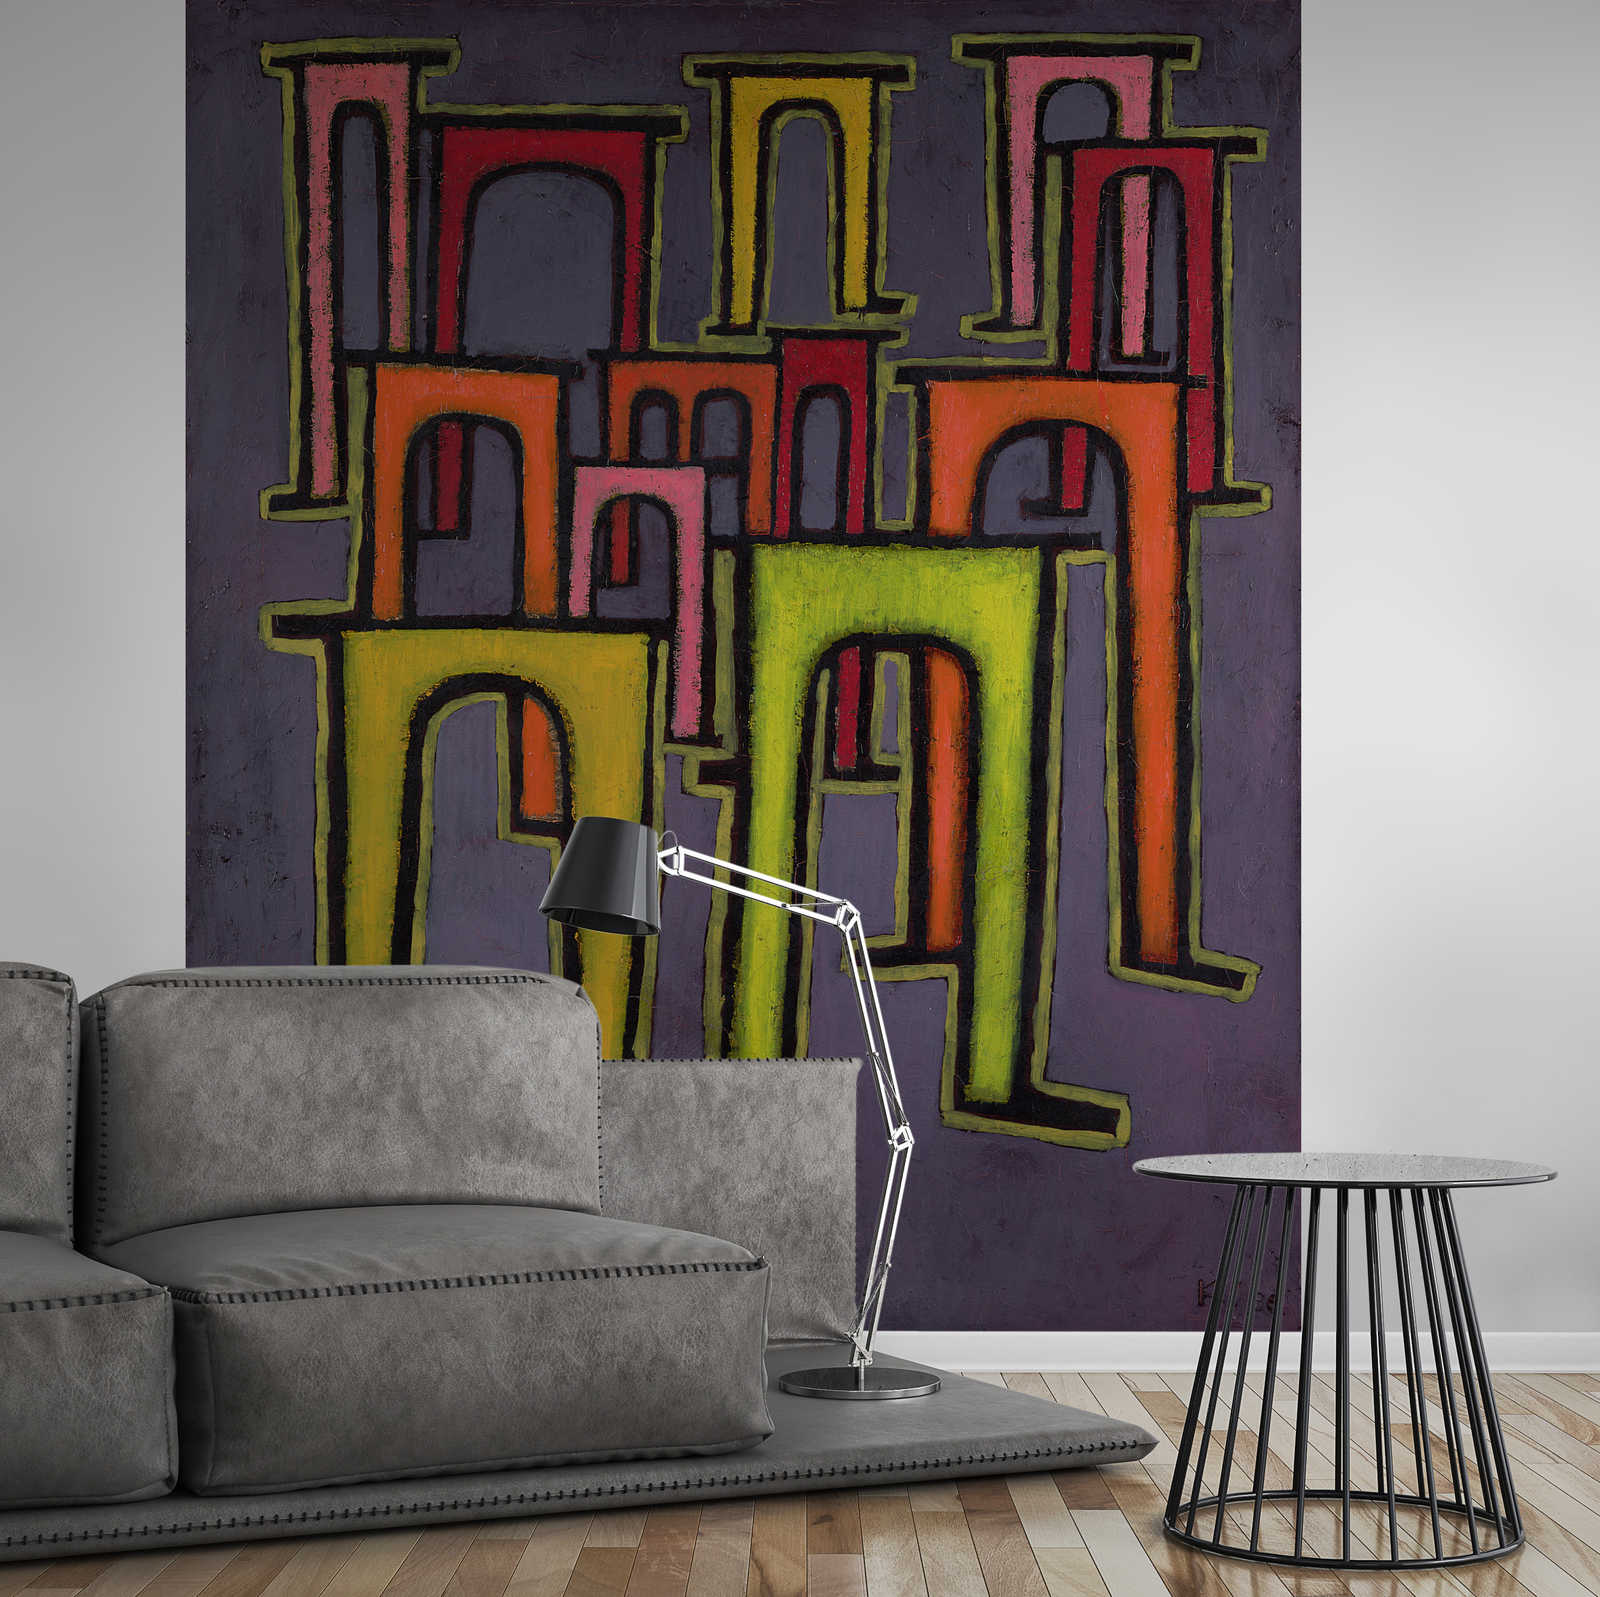             Mural "Revolución del Viaducto" de Paul Klee
        